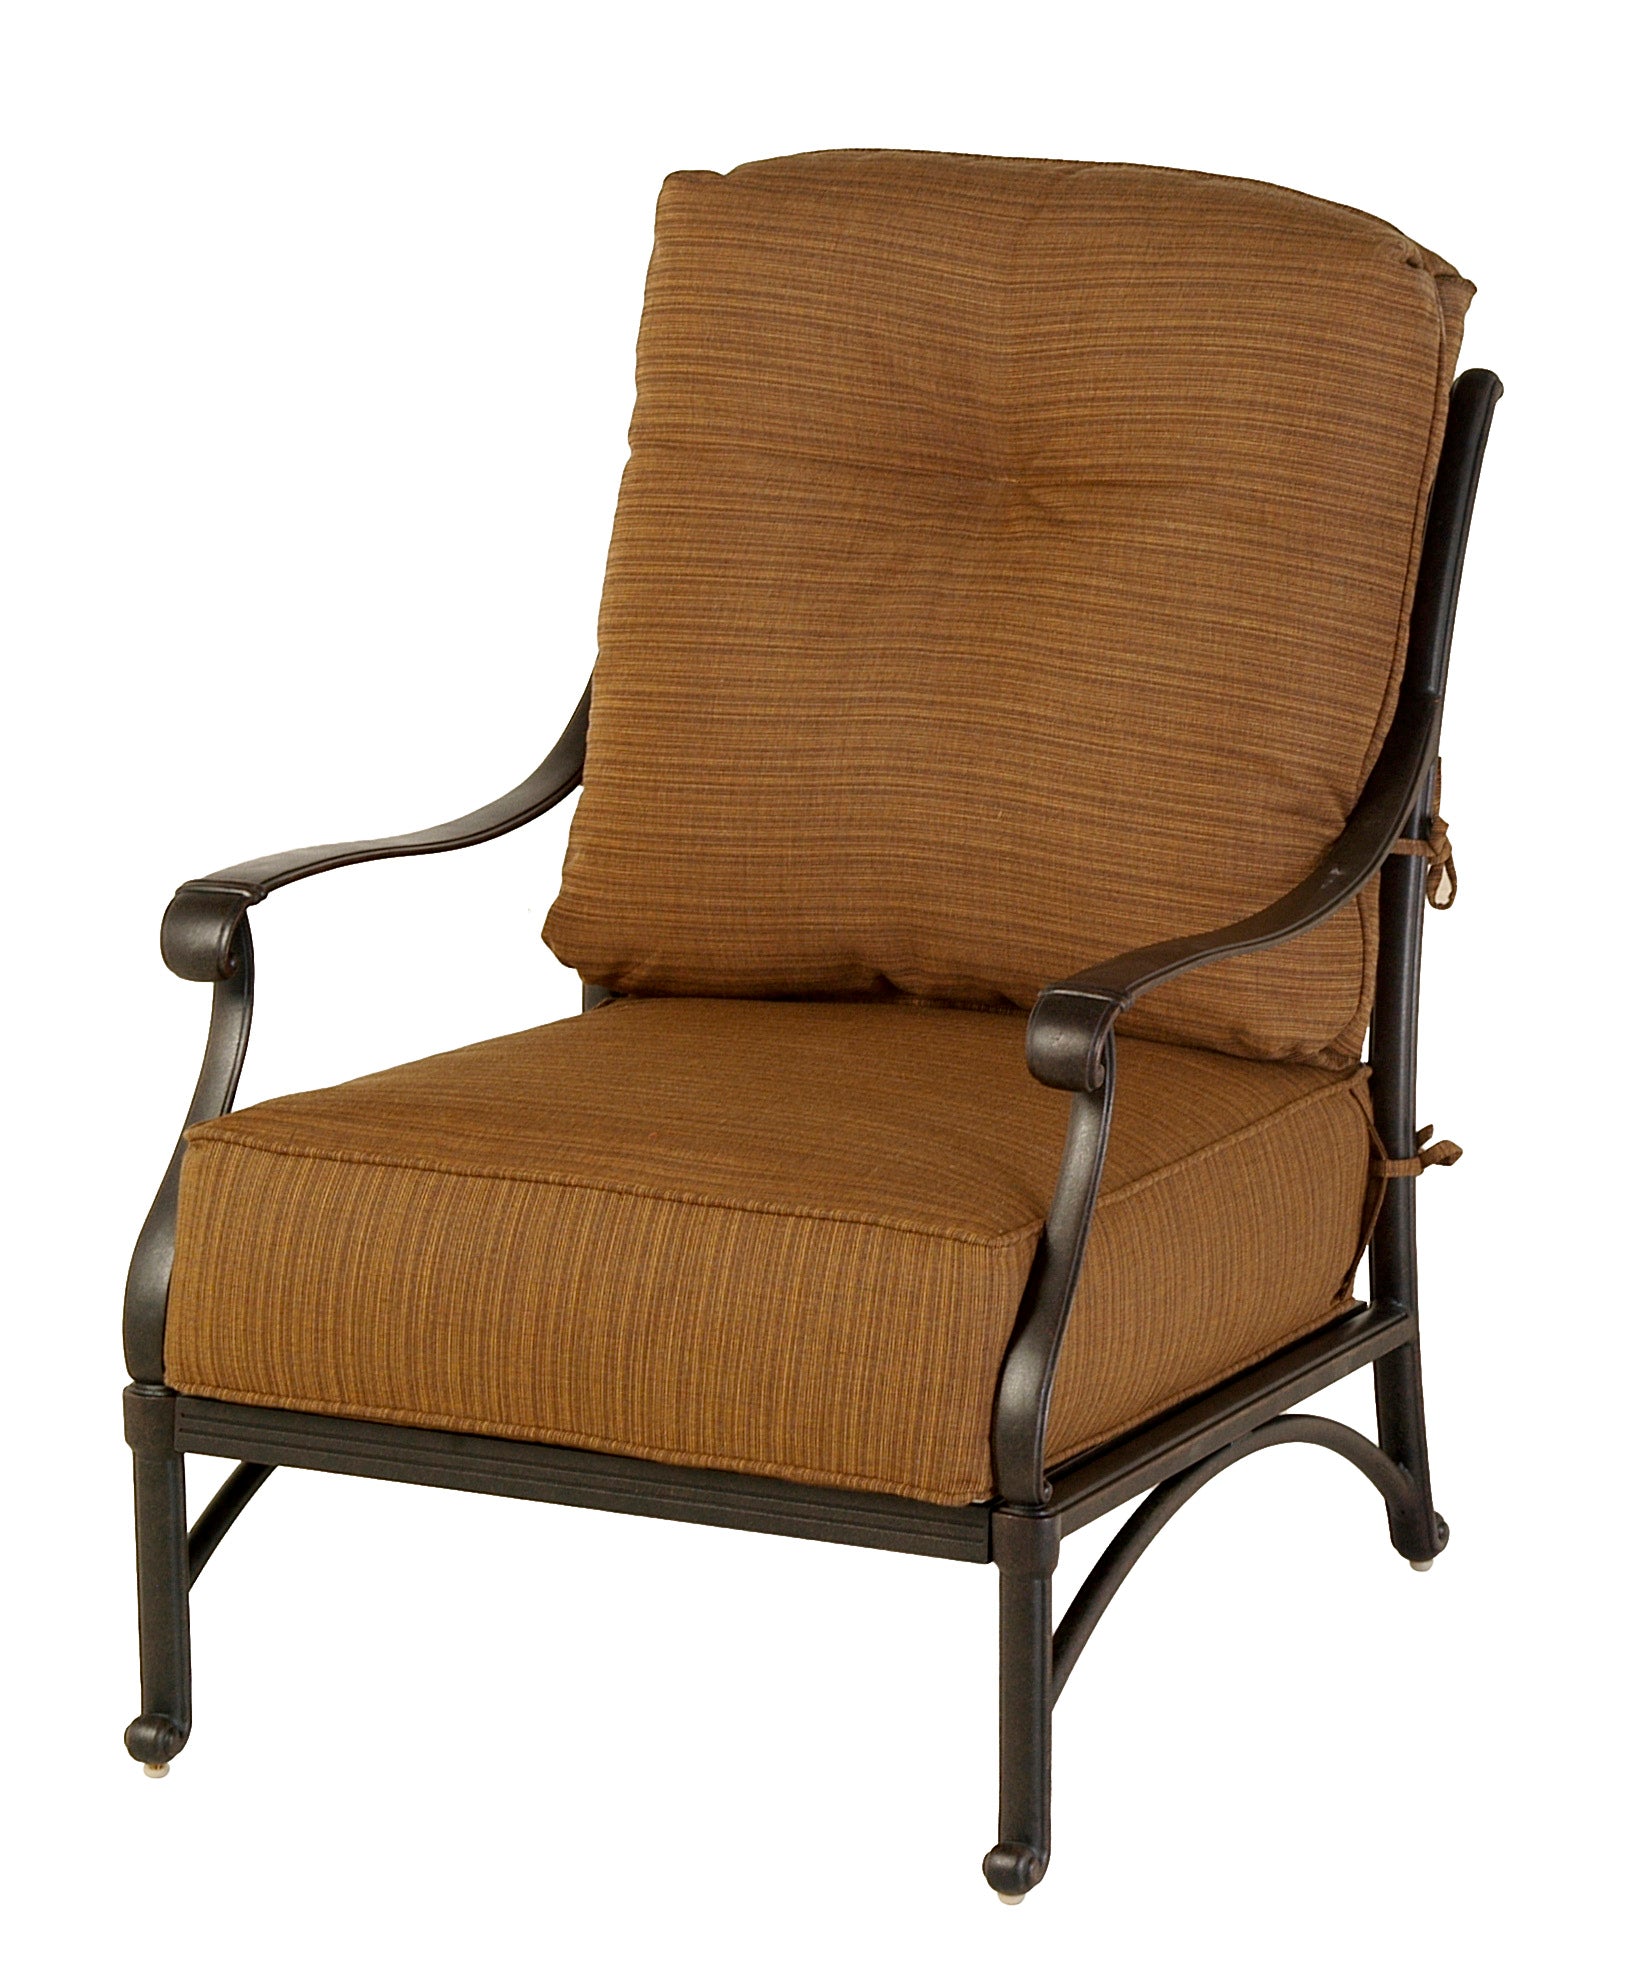 Mayfair Estate Club Chair with Cushion (Desert Bronze)